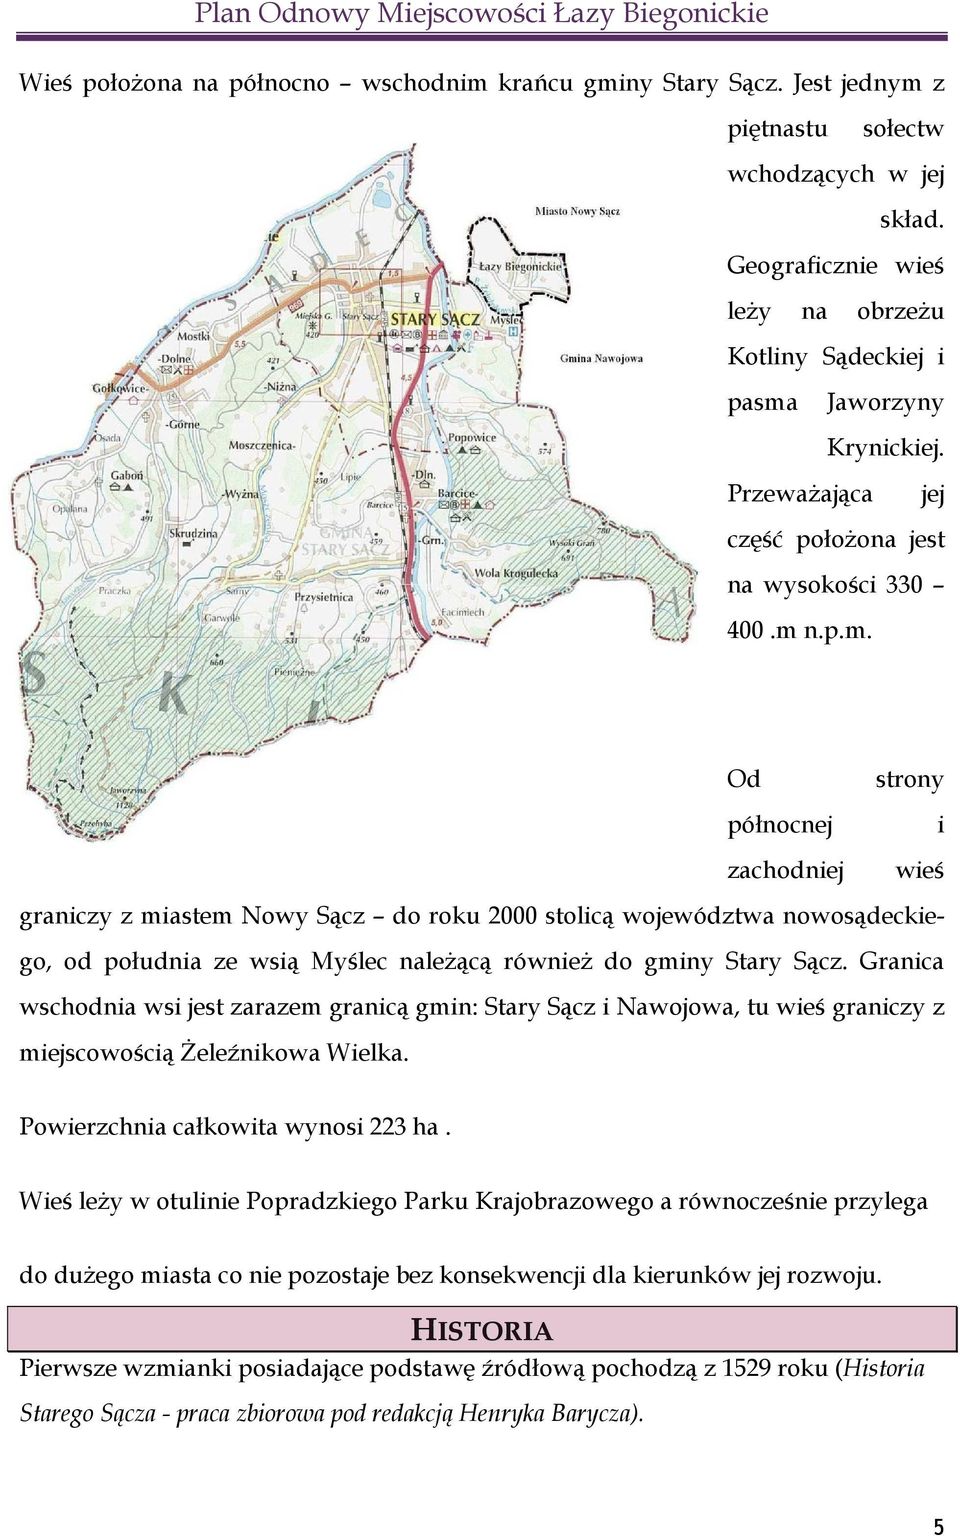 n.p.m. Od północnej zachodniej strony i wieś graniczy z miastem Nowy Sącz do roku 2000 stolicą województwa nowosądeckiego, od południa ze wsią Myślec należącą również do gminy Stary Sącz.